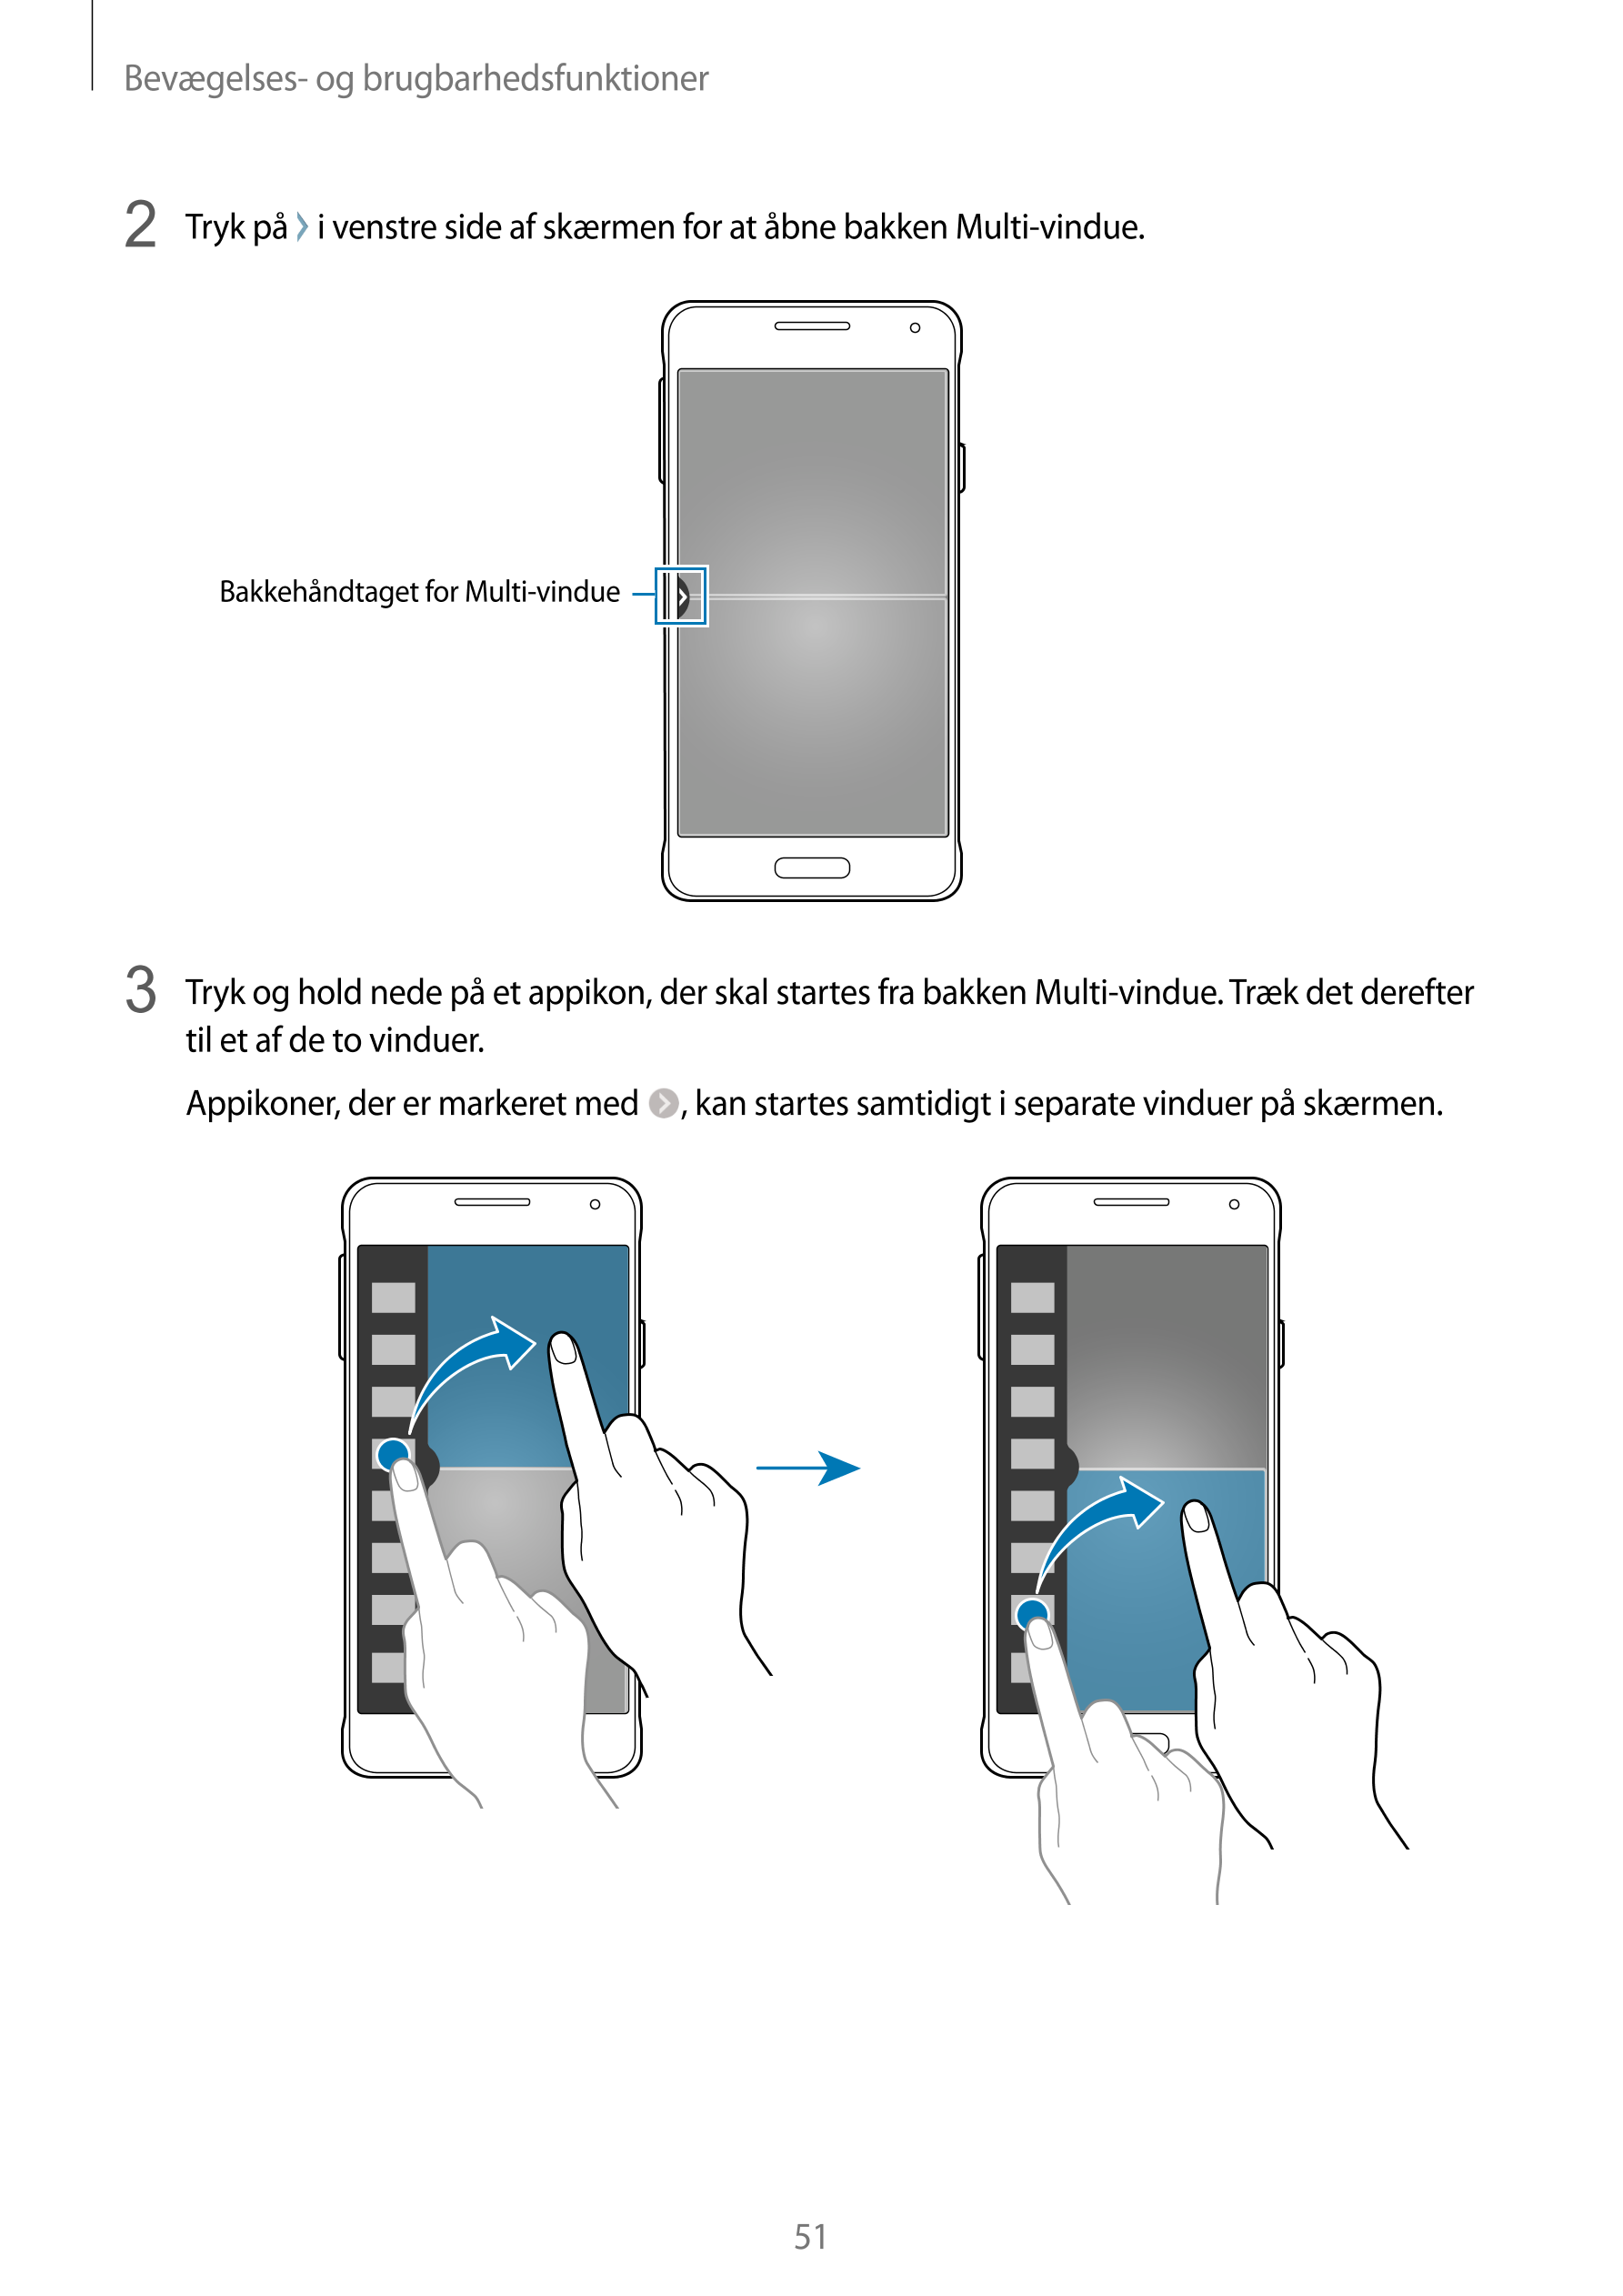 Bevægelses- og brugbarhedsfunktioner
2  Tryk på   i venstre side af skærmen for at åbne bakken Multi-vindue.
Bakkehåndtaget for 